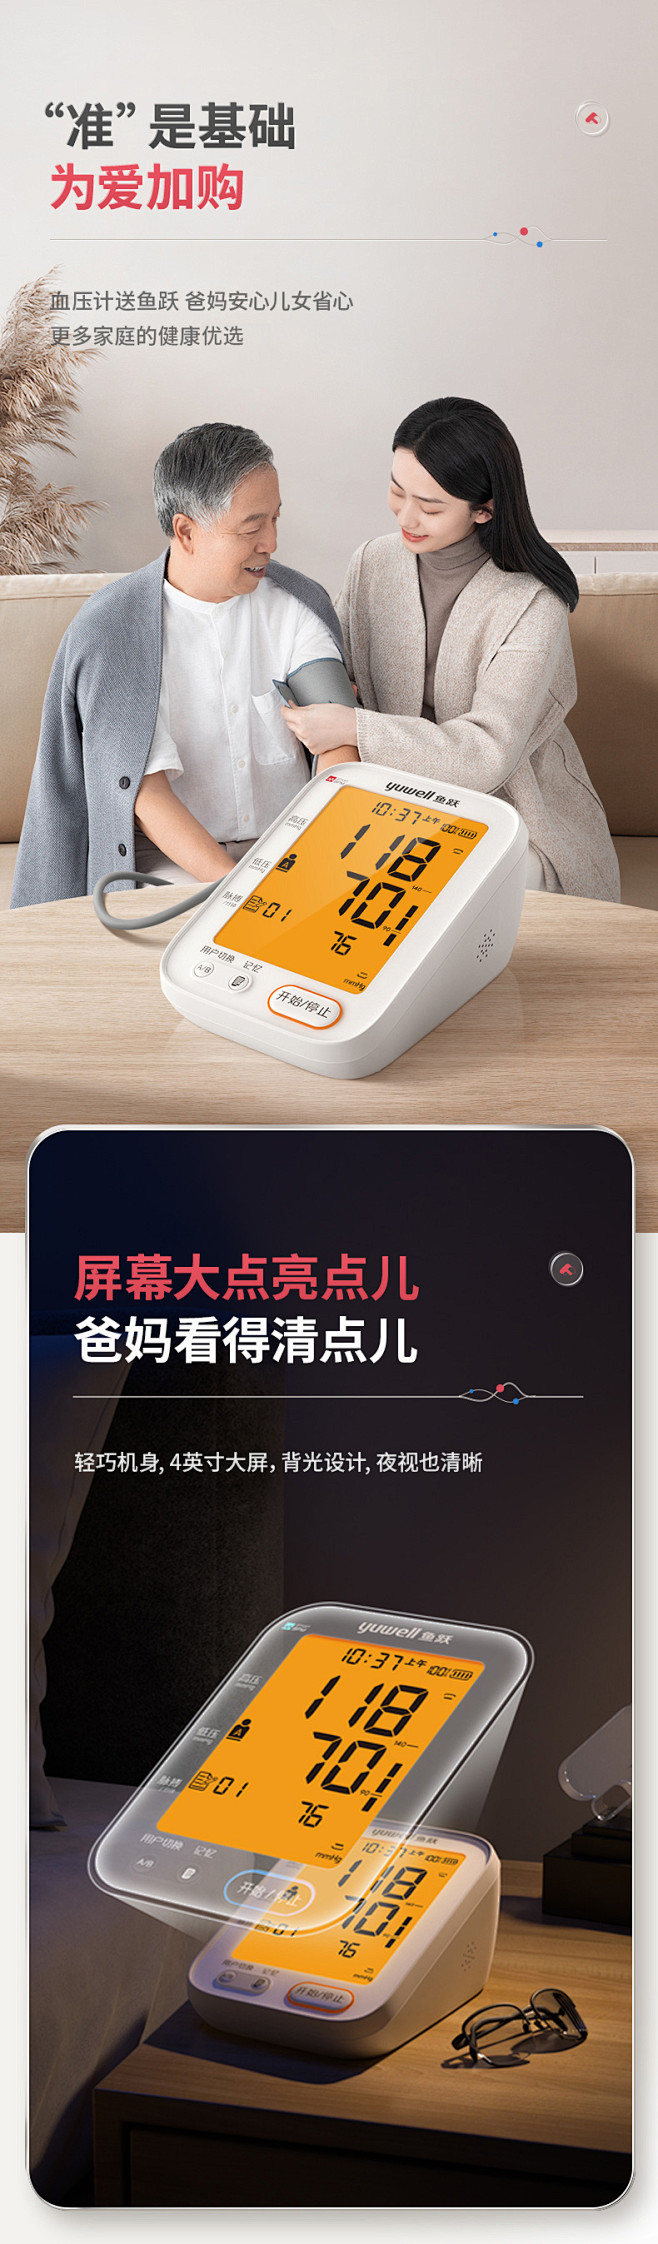 鱼跃电子血压计臂式高精准血压测量仪充电家...